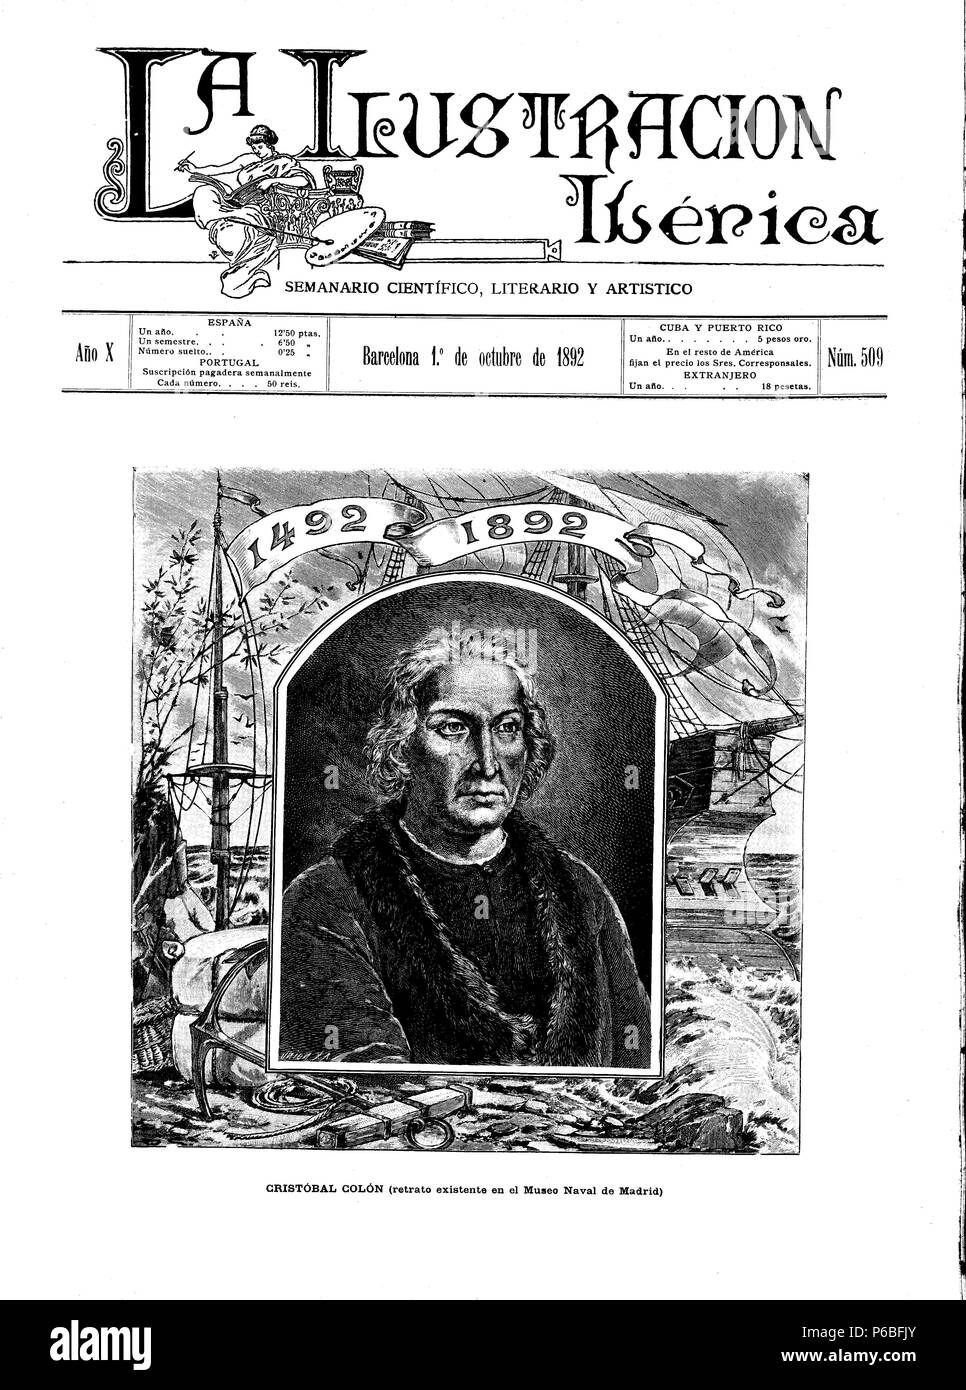 Portada de la revista La Ilustración Ibérica en el IV centenario del descubrimiento de América. Barcelona 1 de octubre de 1892. Grabado de 1892 Stock Photo - Alamy